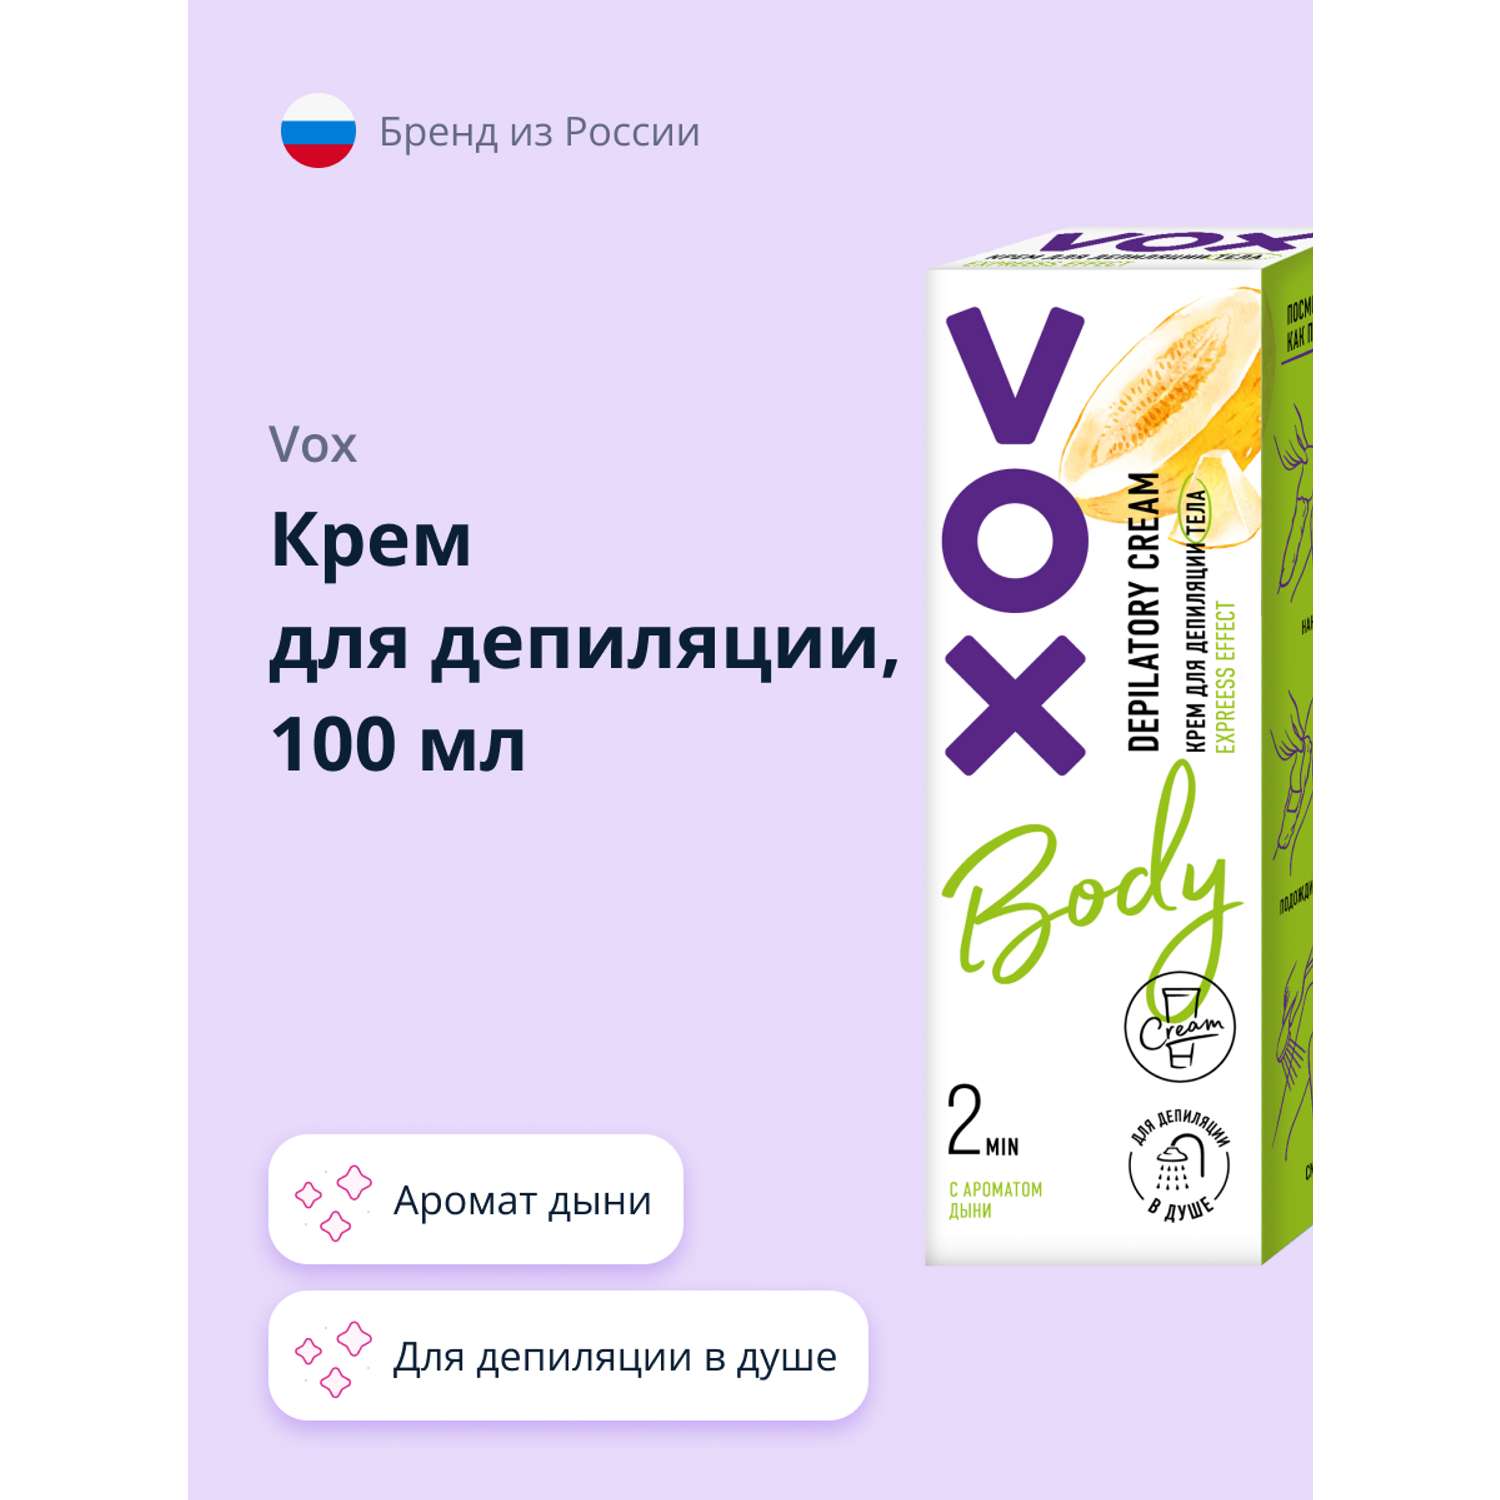 Крем для депиляции VOX в душе (с ароматом дыни) 100 мл - фото 1